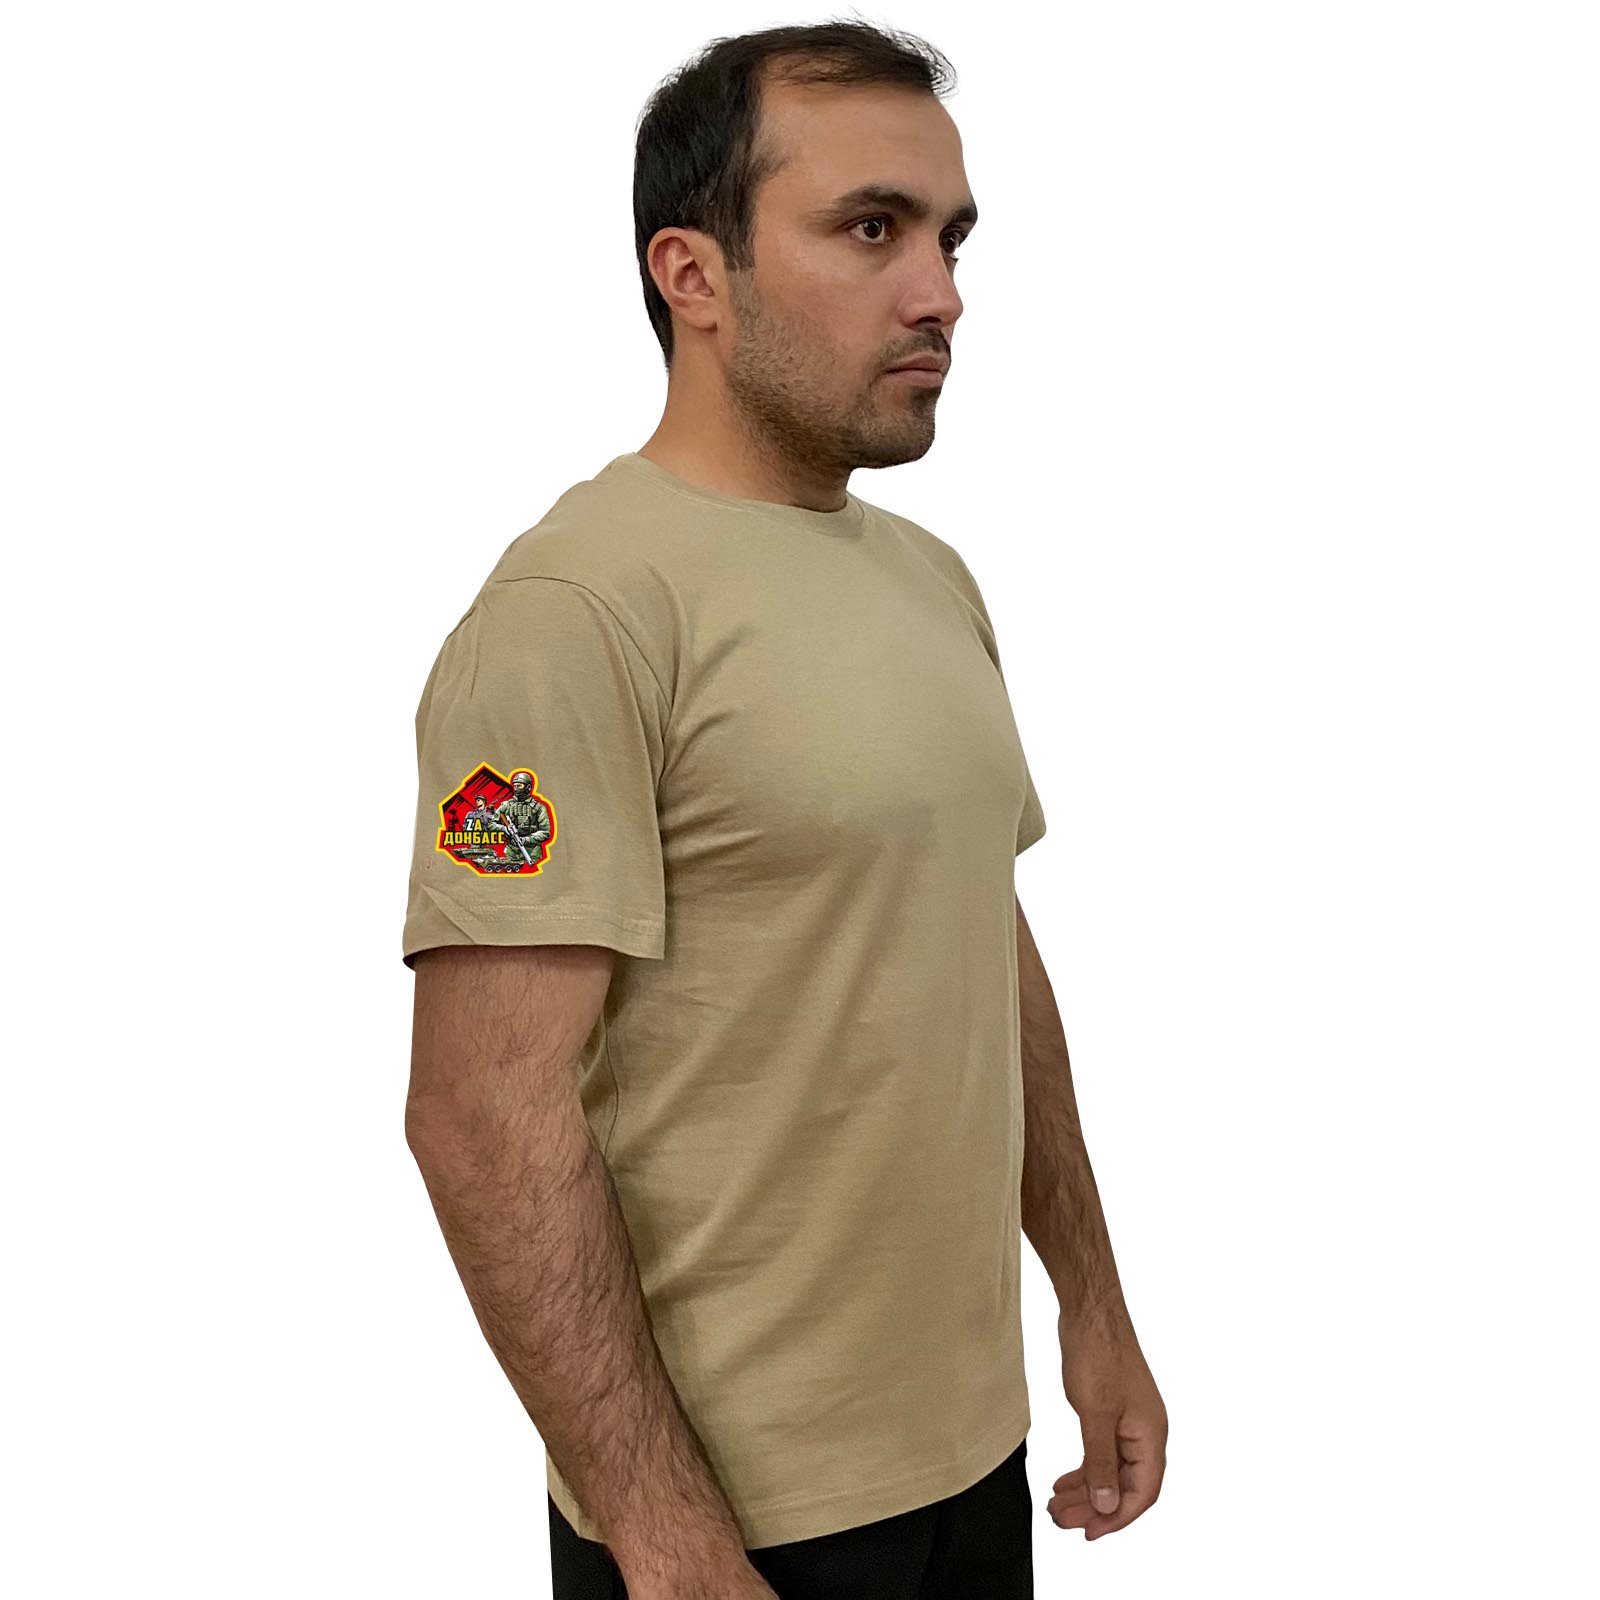 Купить трикотажную мужскую футболку Zа Донбасс онлайн